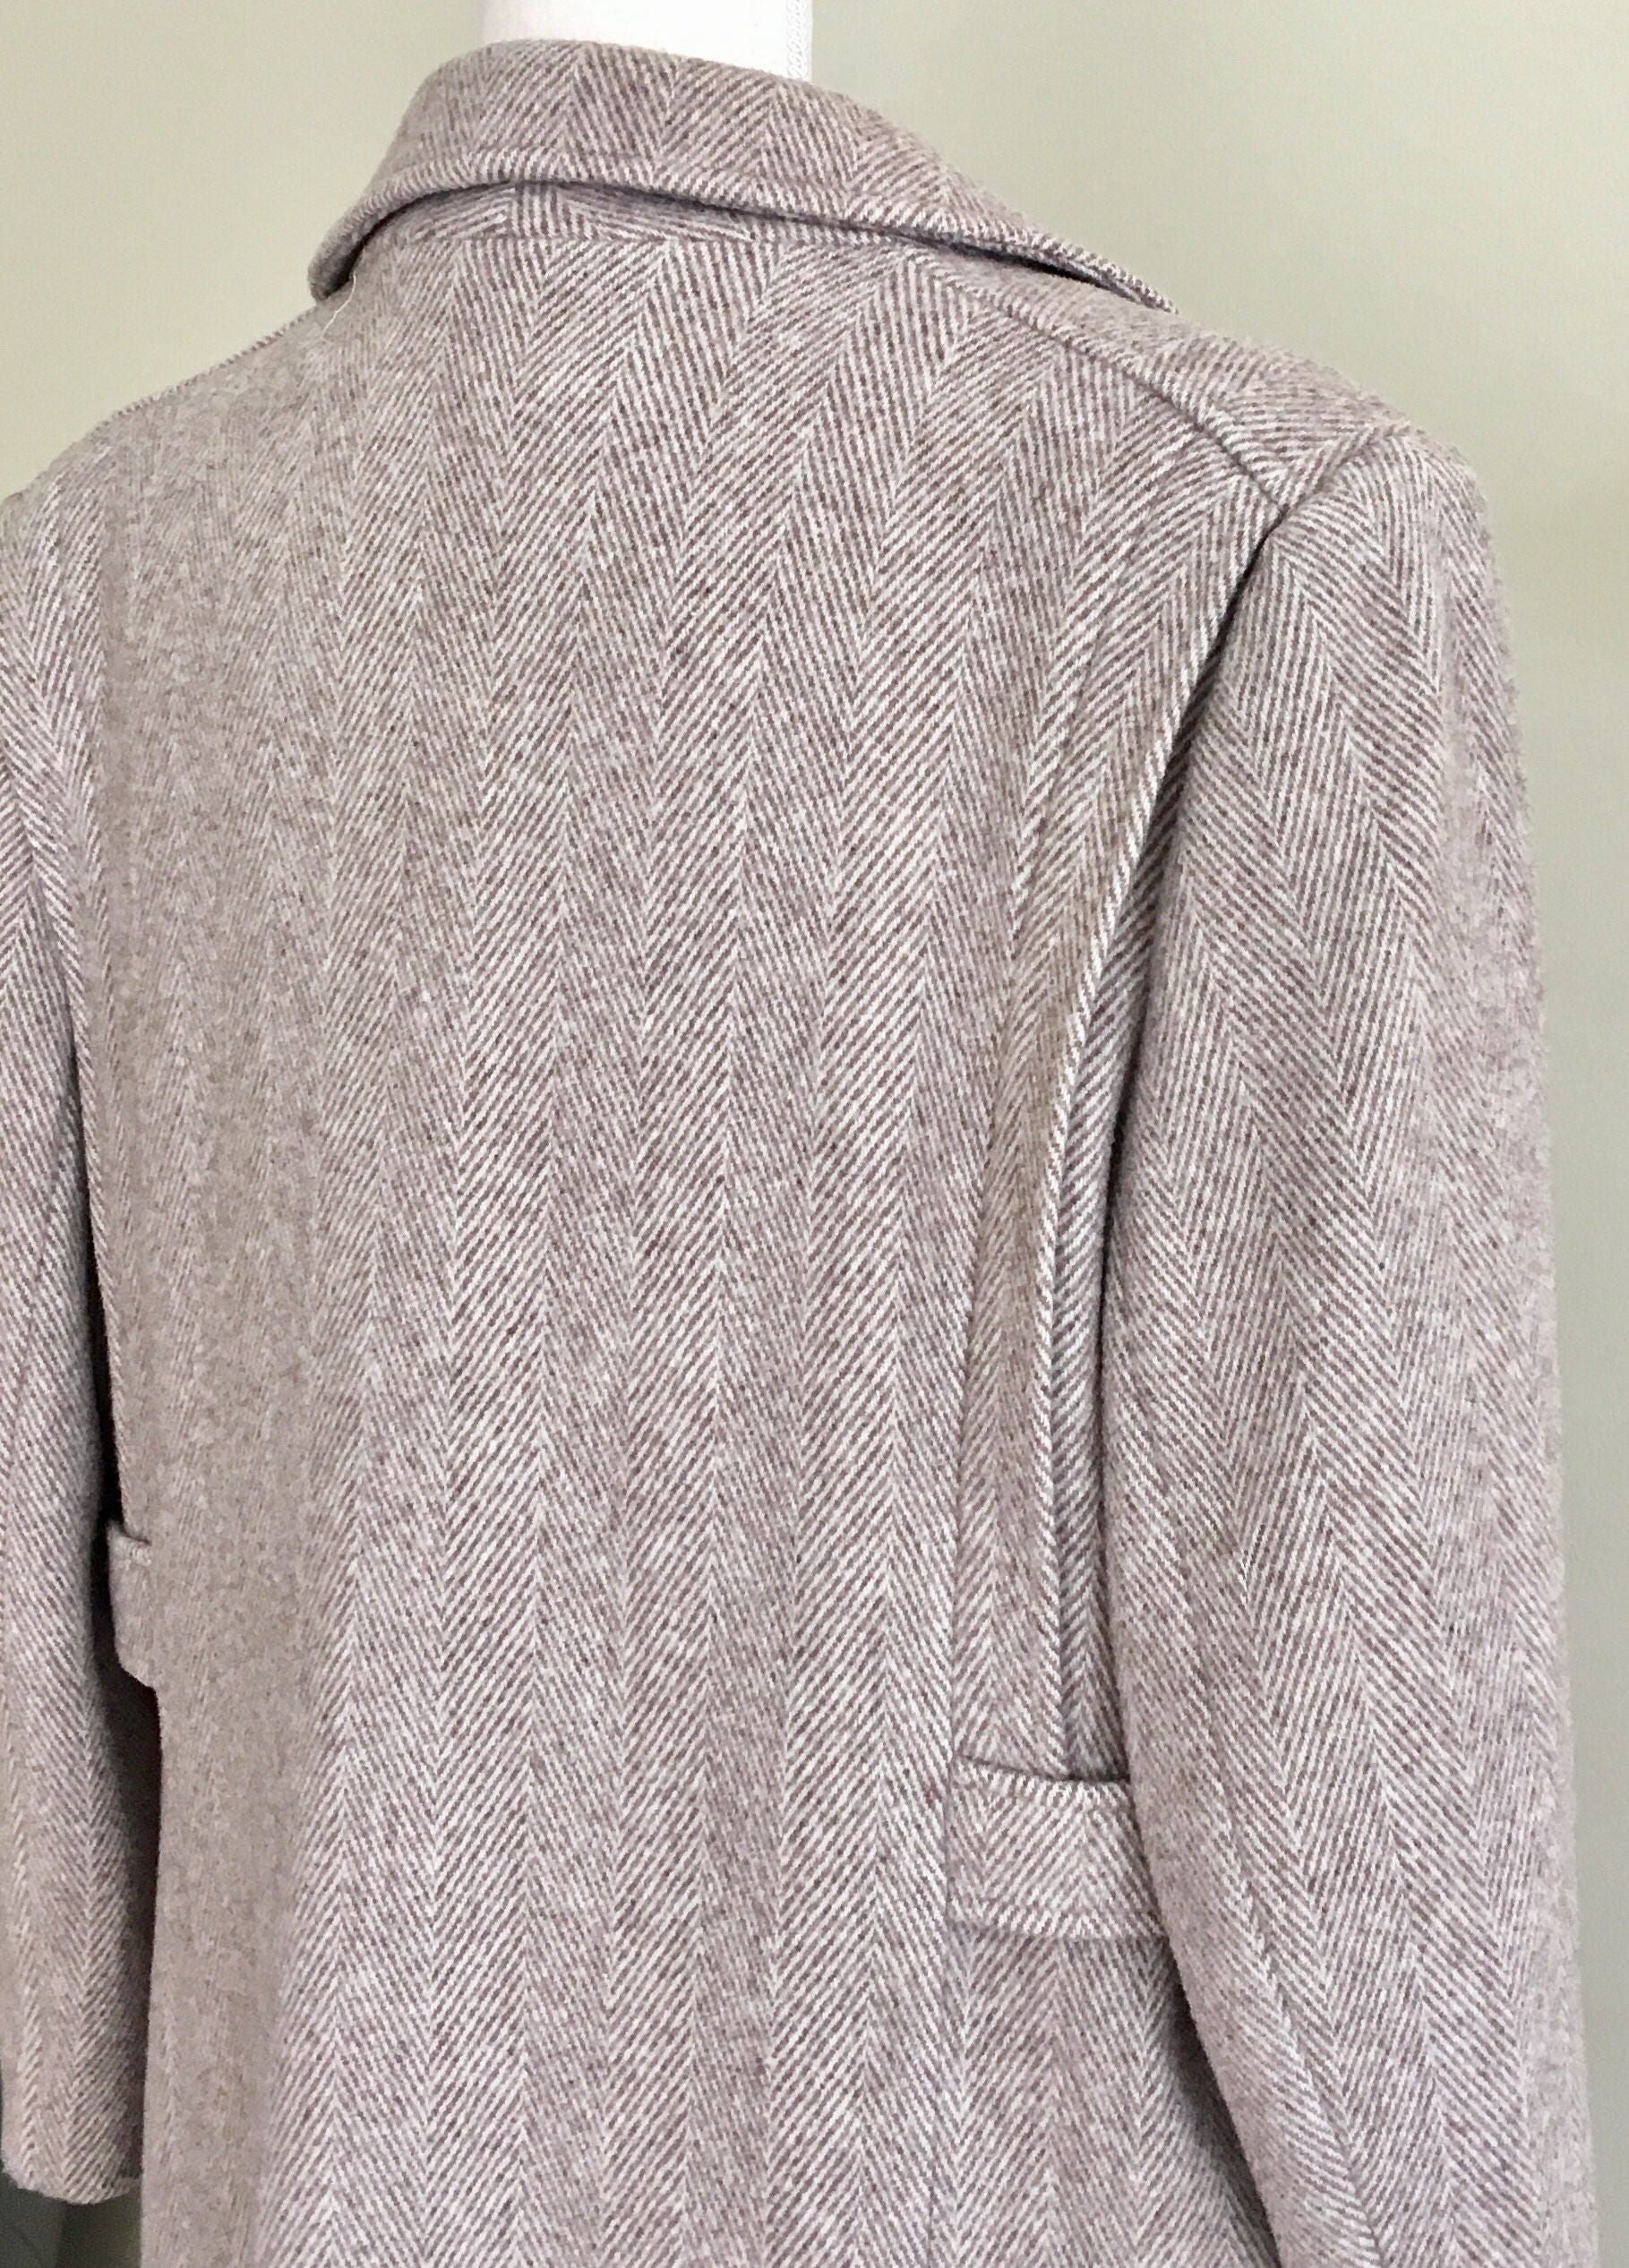 Long Herringbone Tweed Coat Beige Grey Gray Wool Coat Jacket Vintage ...